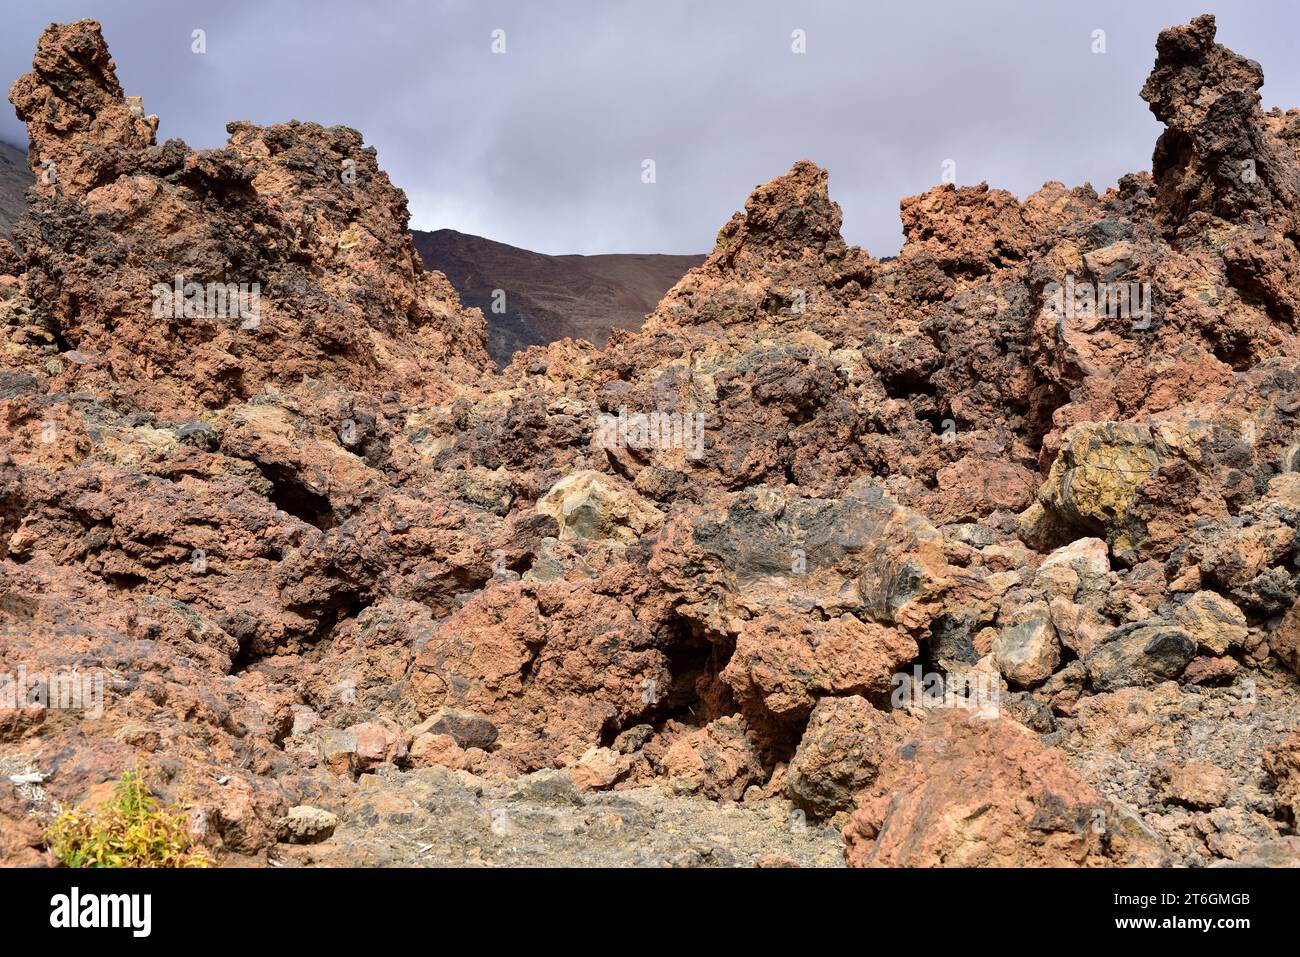 Flusso di lava solidificato tipo aa. Parco nazionale di Cañadas del Teide, Tenerife, Isole Canarie, Spagna. Foto Stock